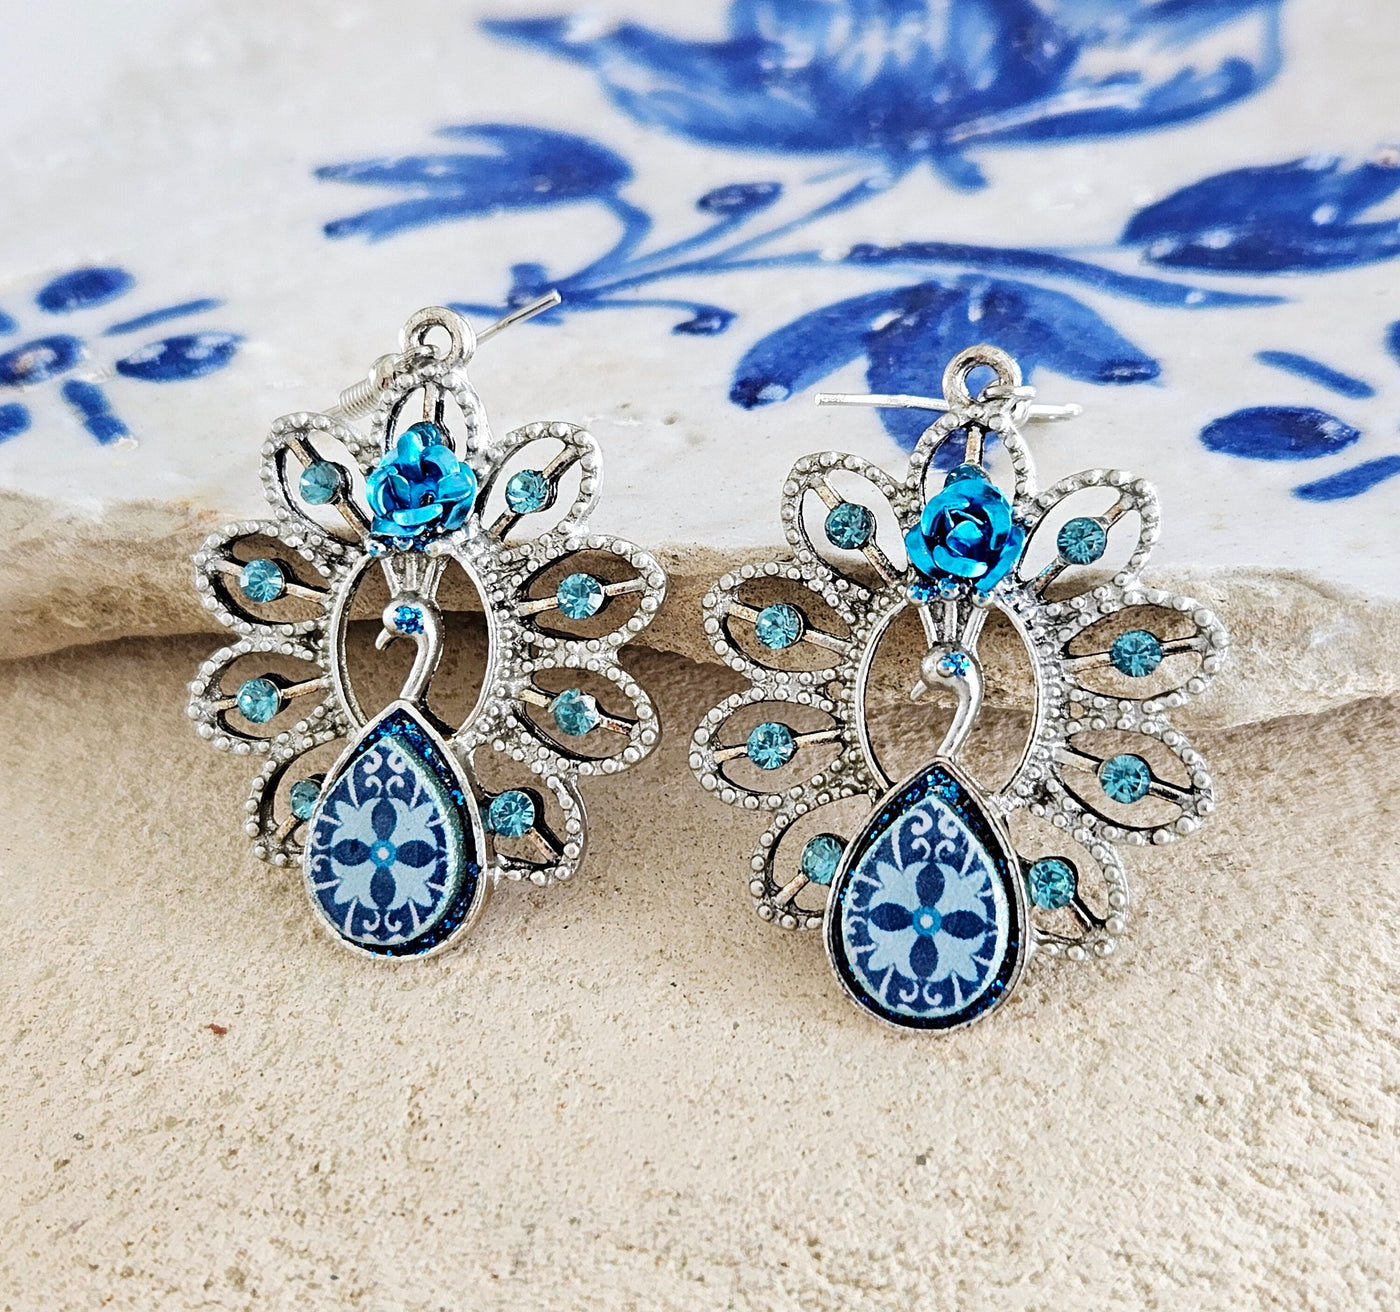 Aquamarine Blue Peacock Earring Portuguese Tile Earring Statement Jewelry Azulejo Blue Bird Tile Drop Earring Teardrop Portugal Tile Gift